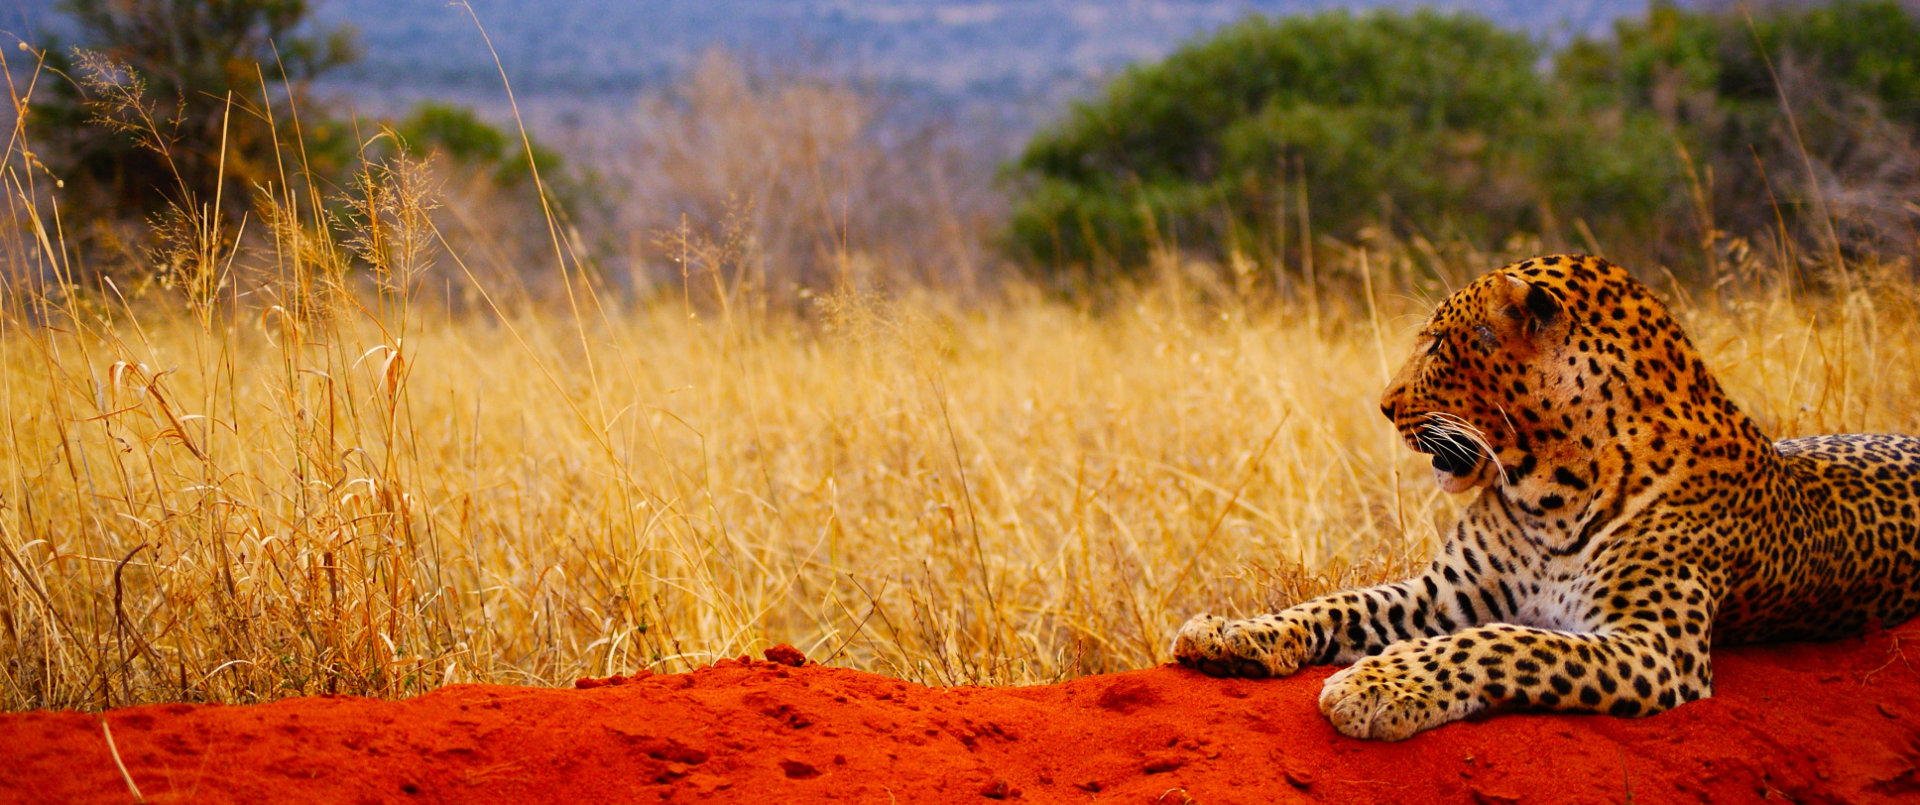 Avis et témoignages sur nos safaris en Tanzanie